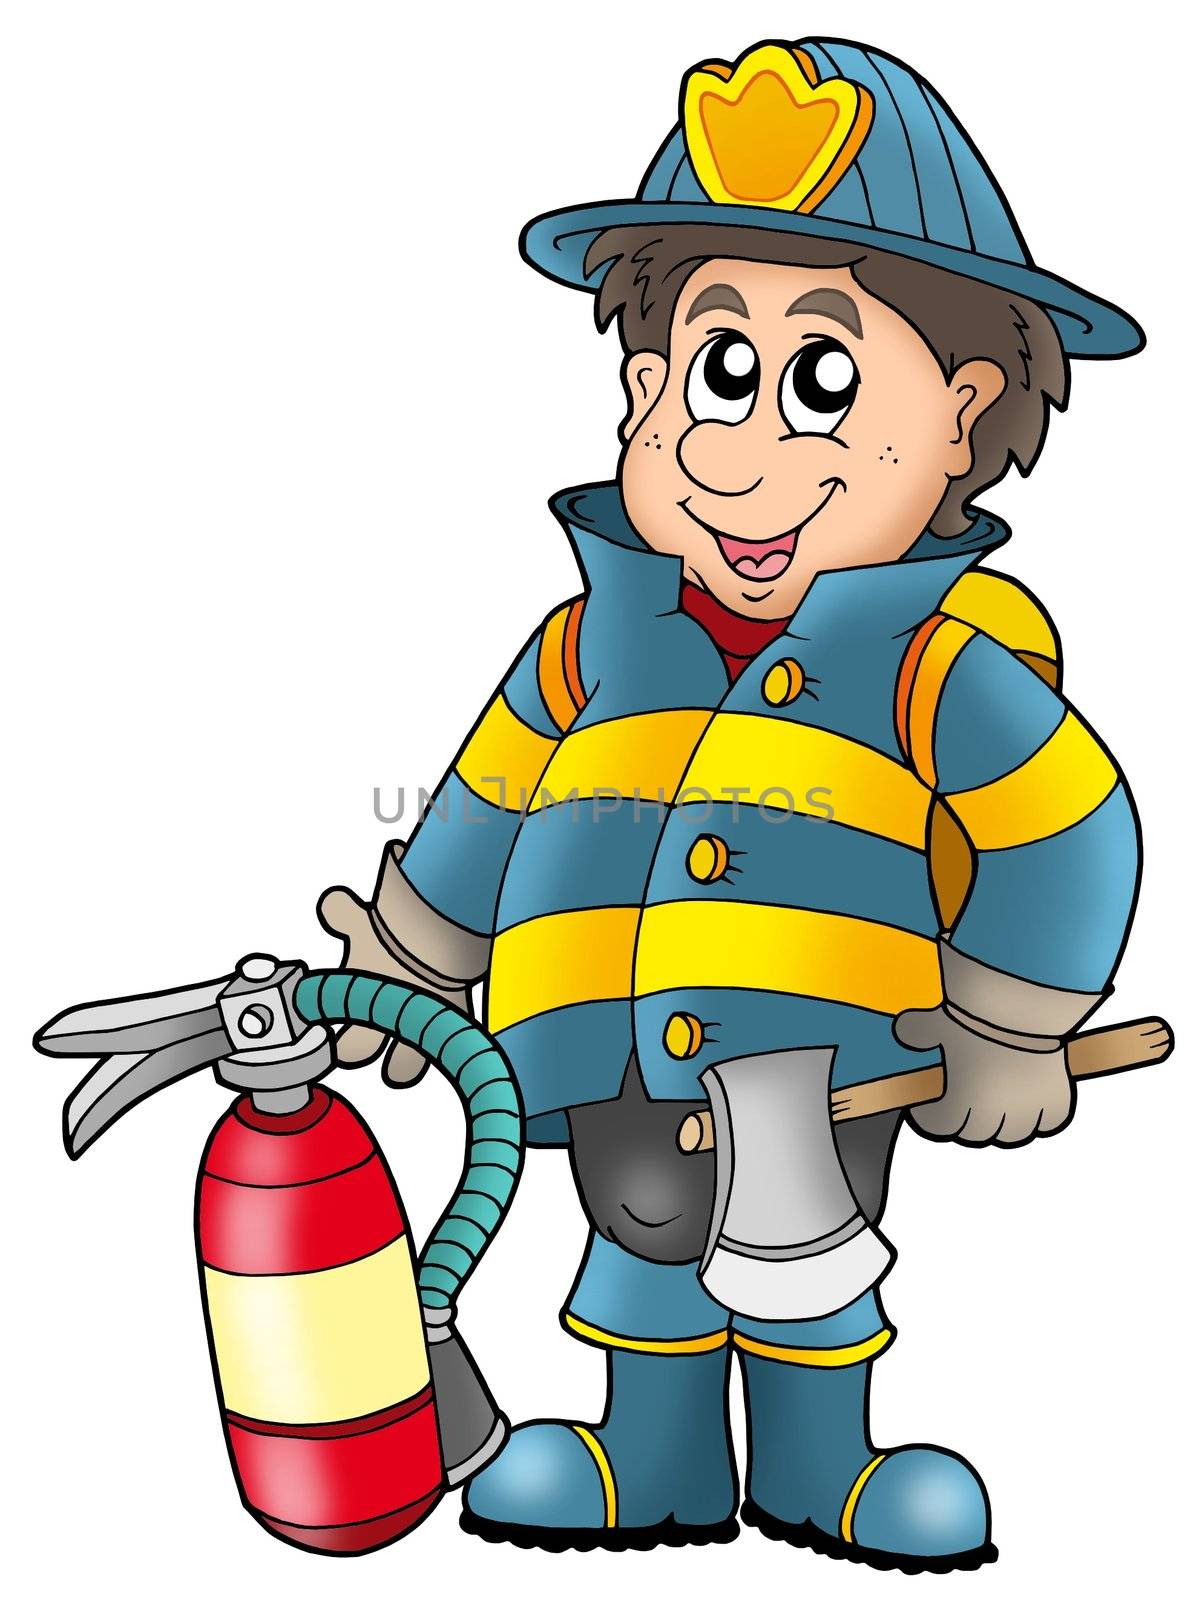 Fireman holding fire extinguisher - color illustration.